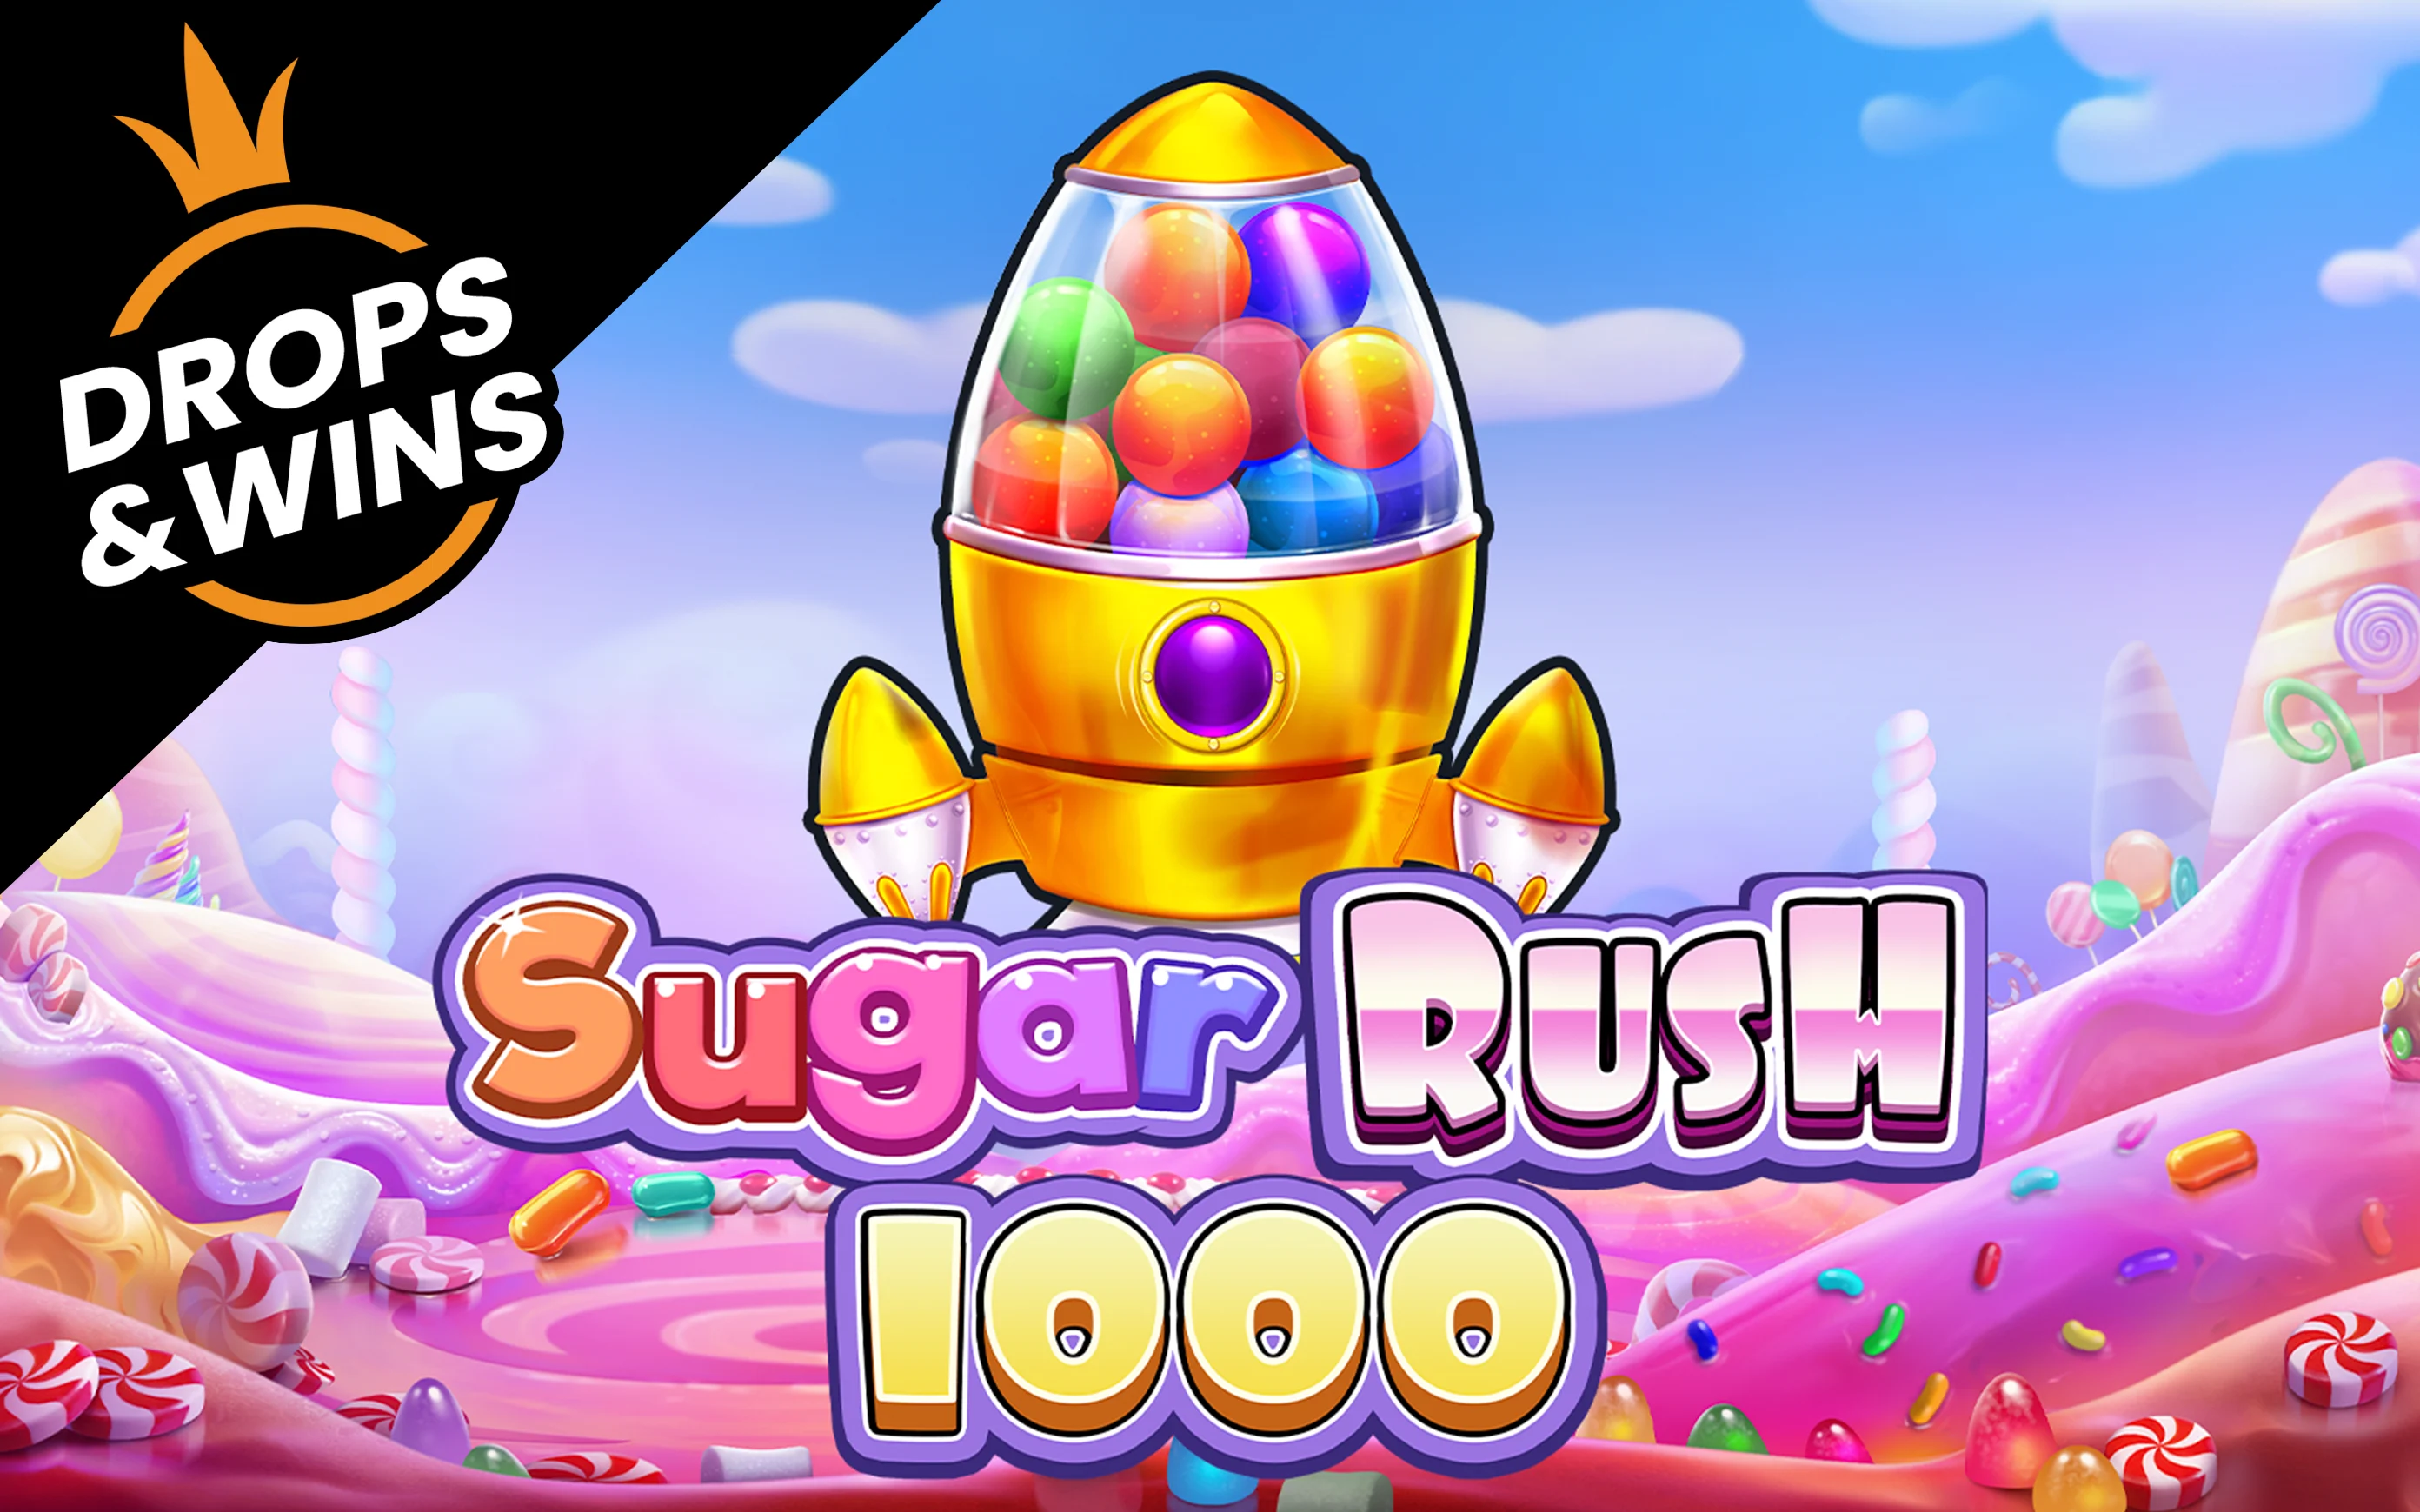 Spielen Sie Sugar Rush 1000 auf Starcasino.be-Online-Casino